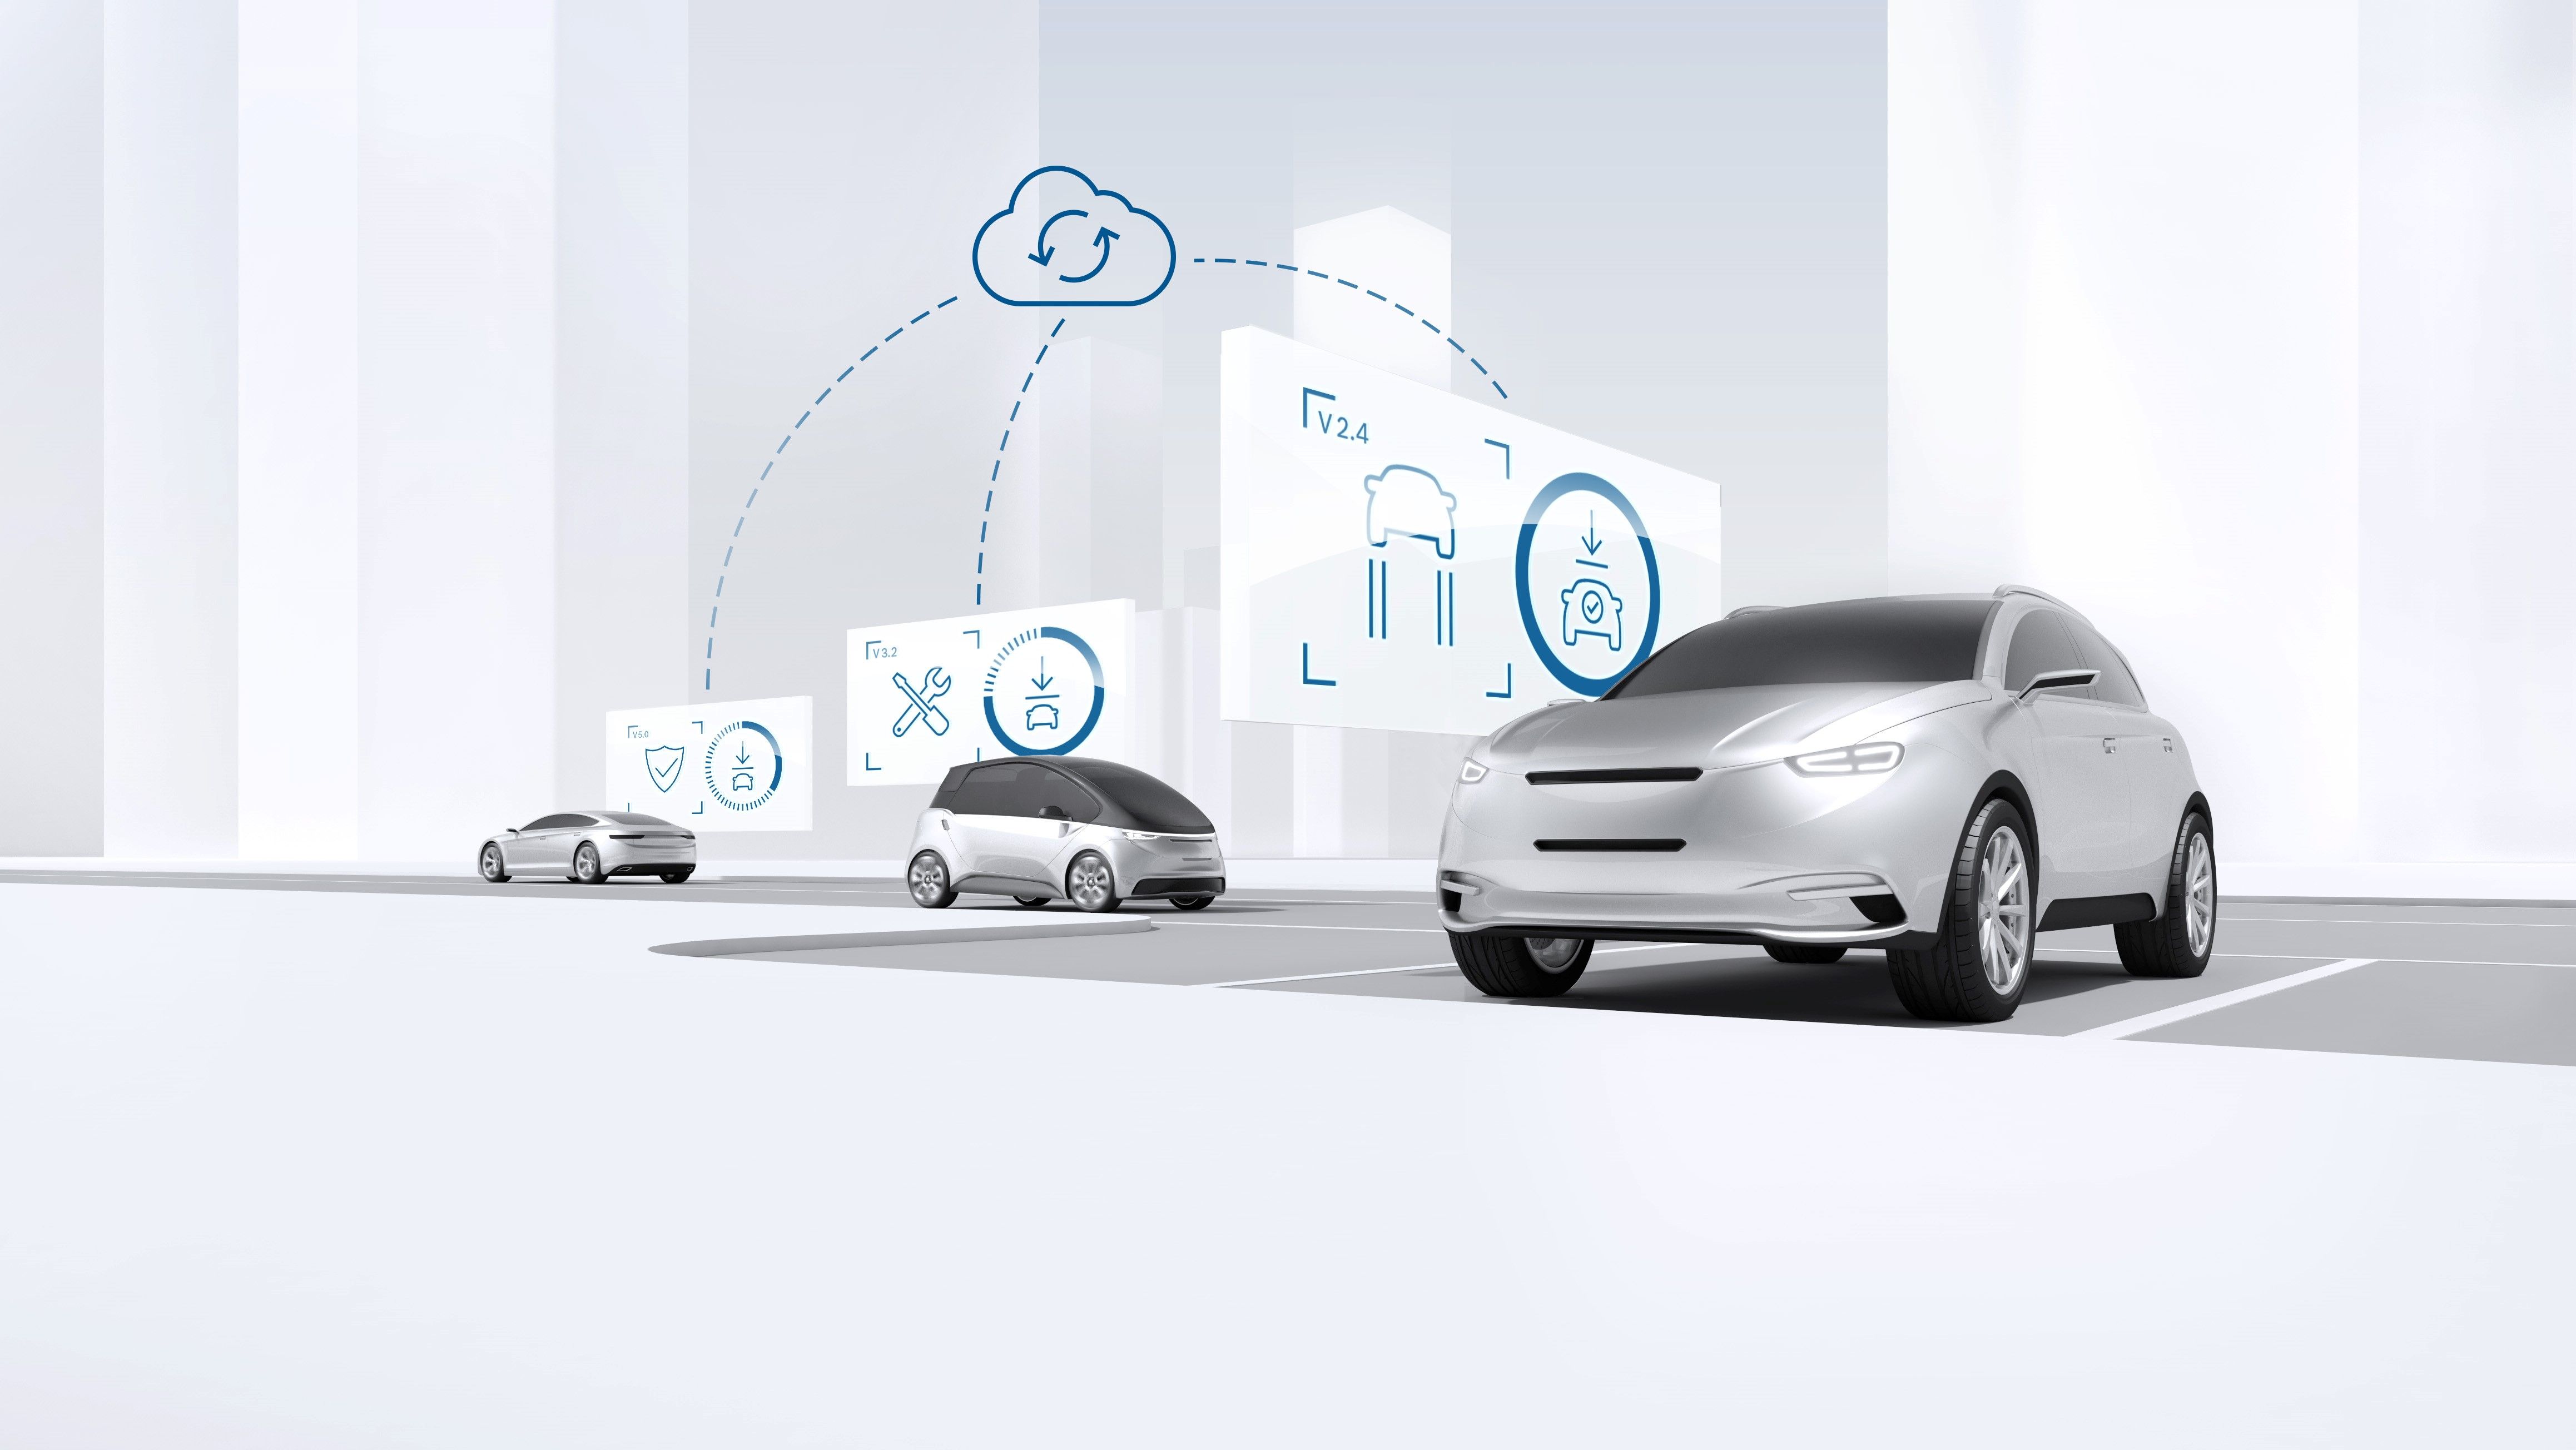 Bosch ontwikkelt en produceert onderdelen voor geautomatiseerd rijden